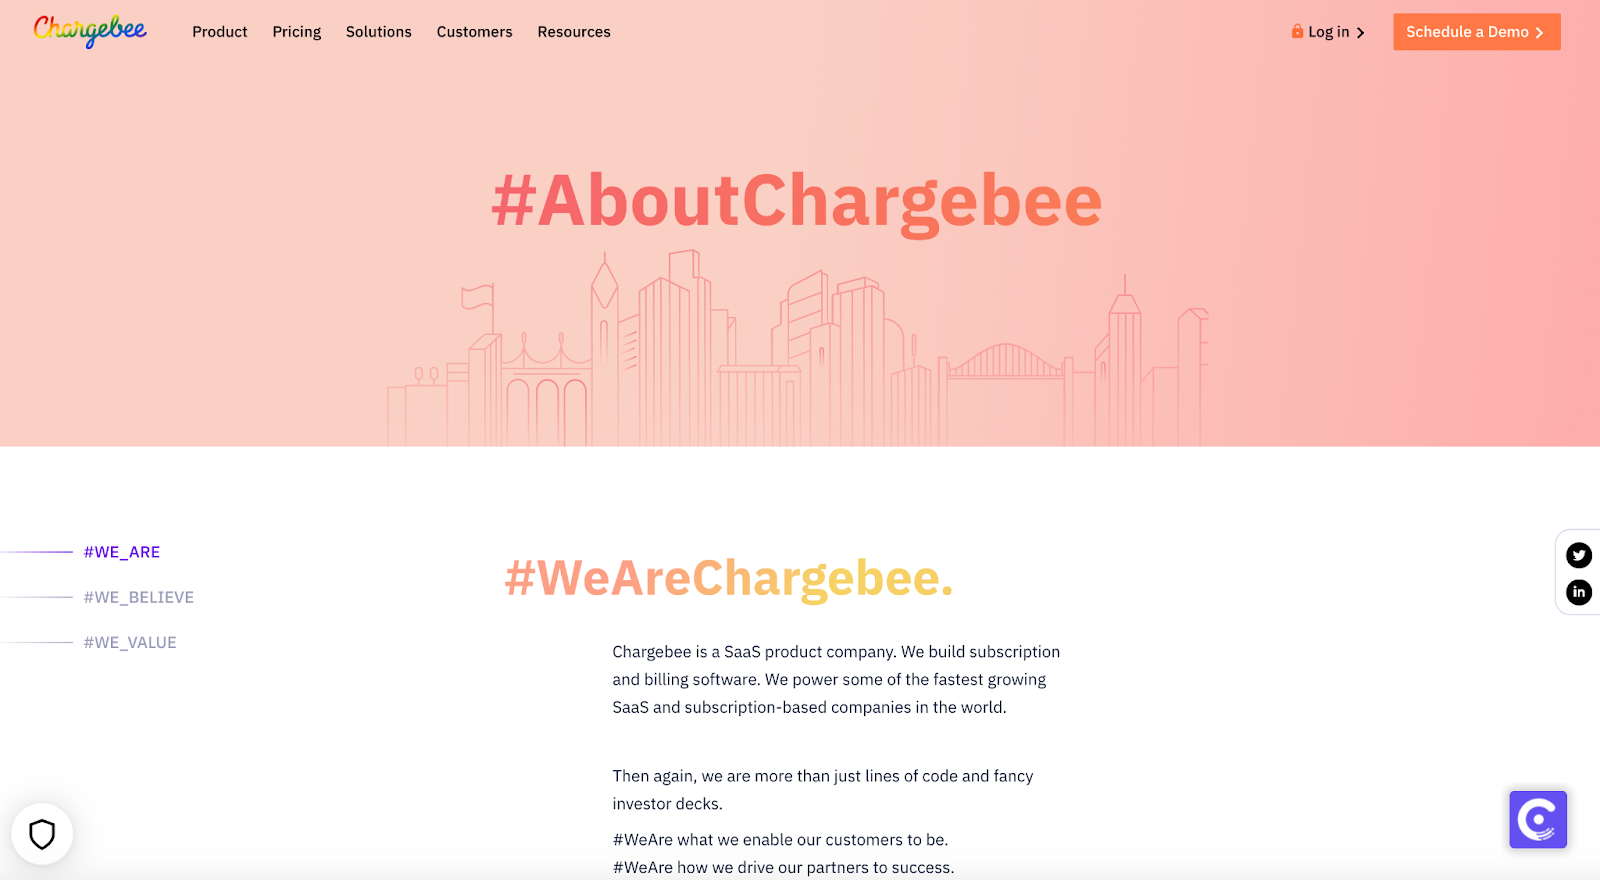 Chargbee 的「關於我們」頁面是其網站的重要組成部分。